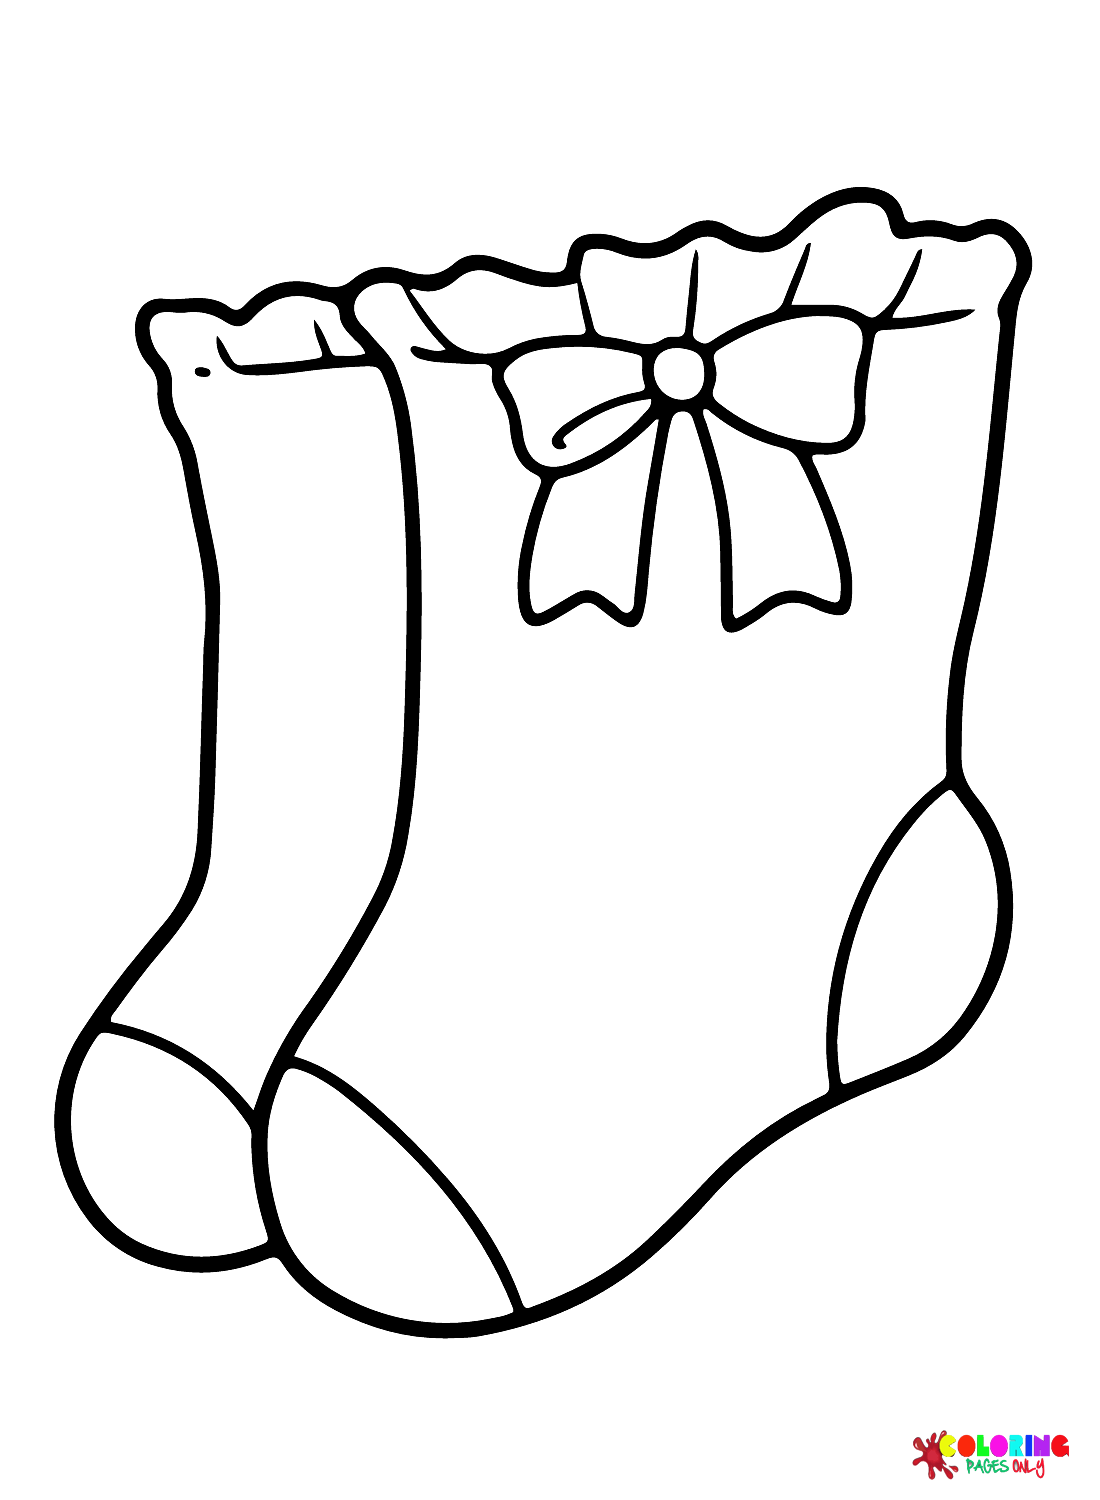 袜子蝴蝶结婴儿袜